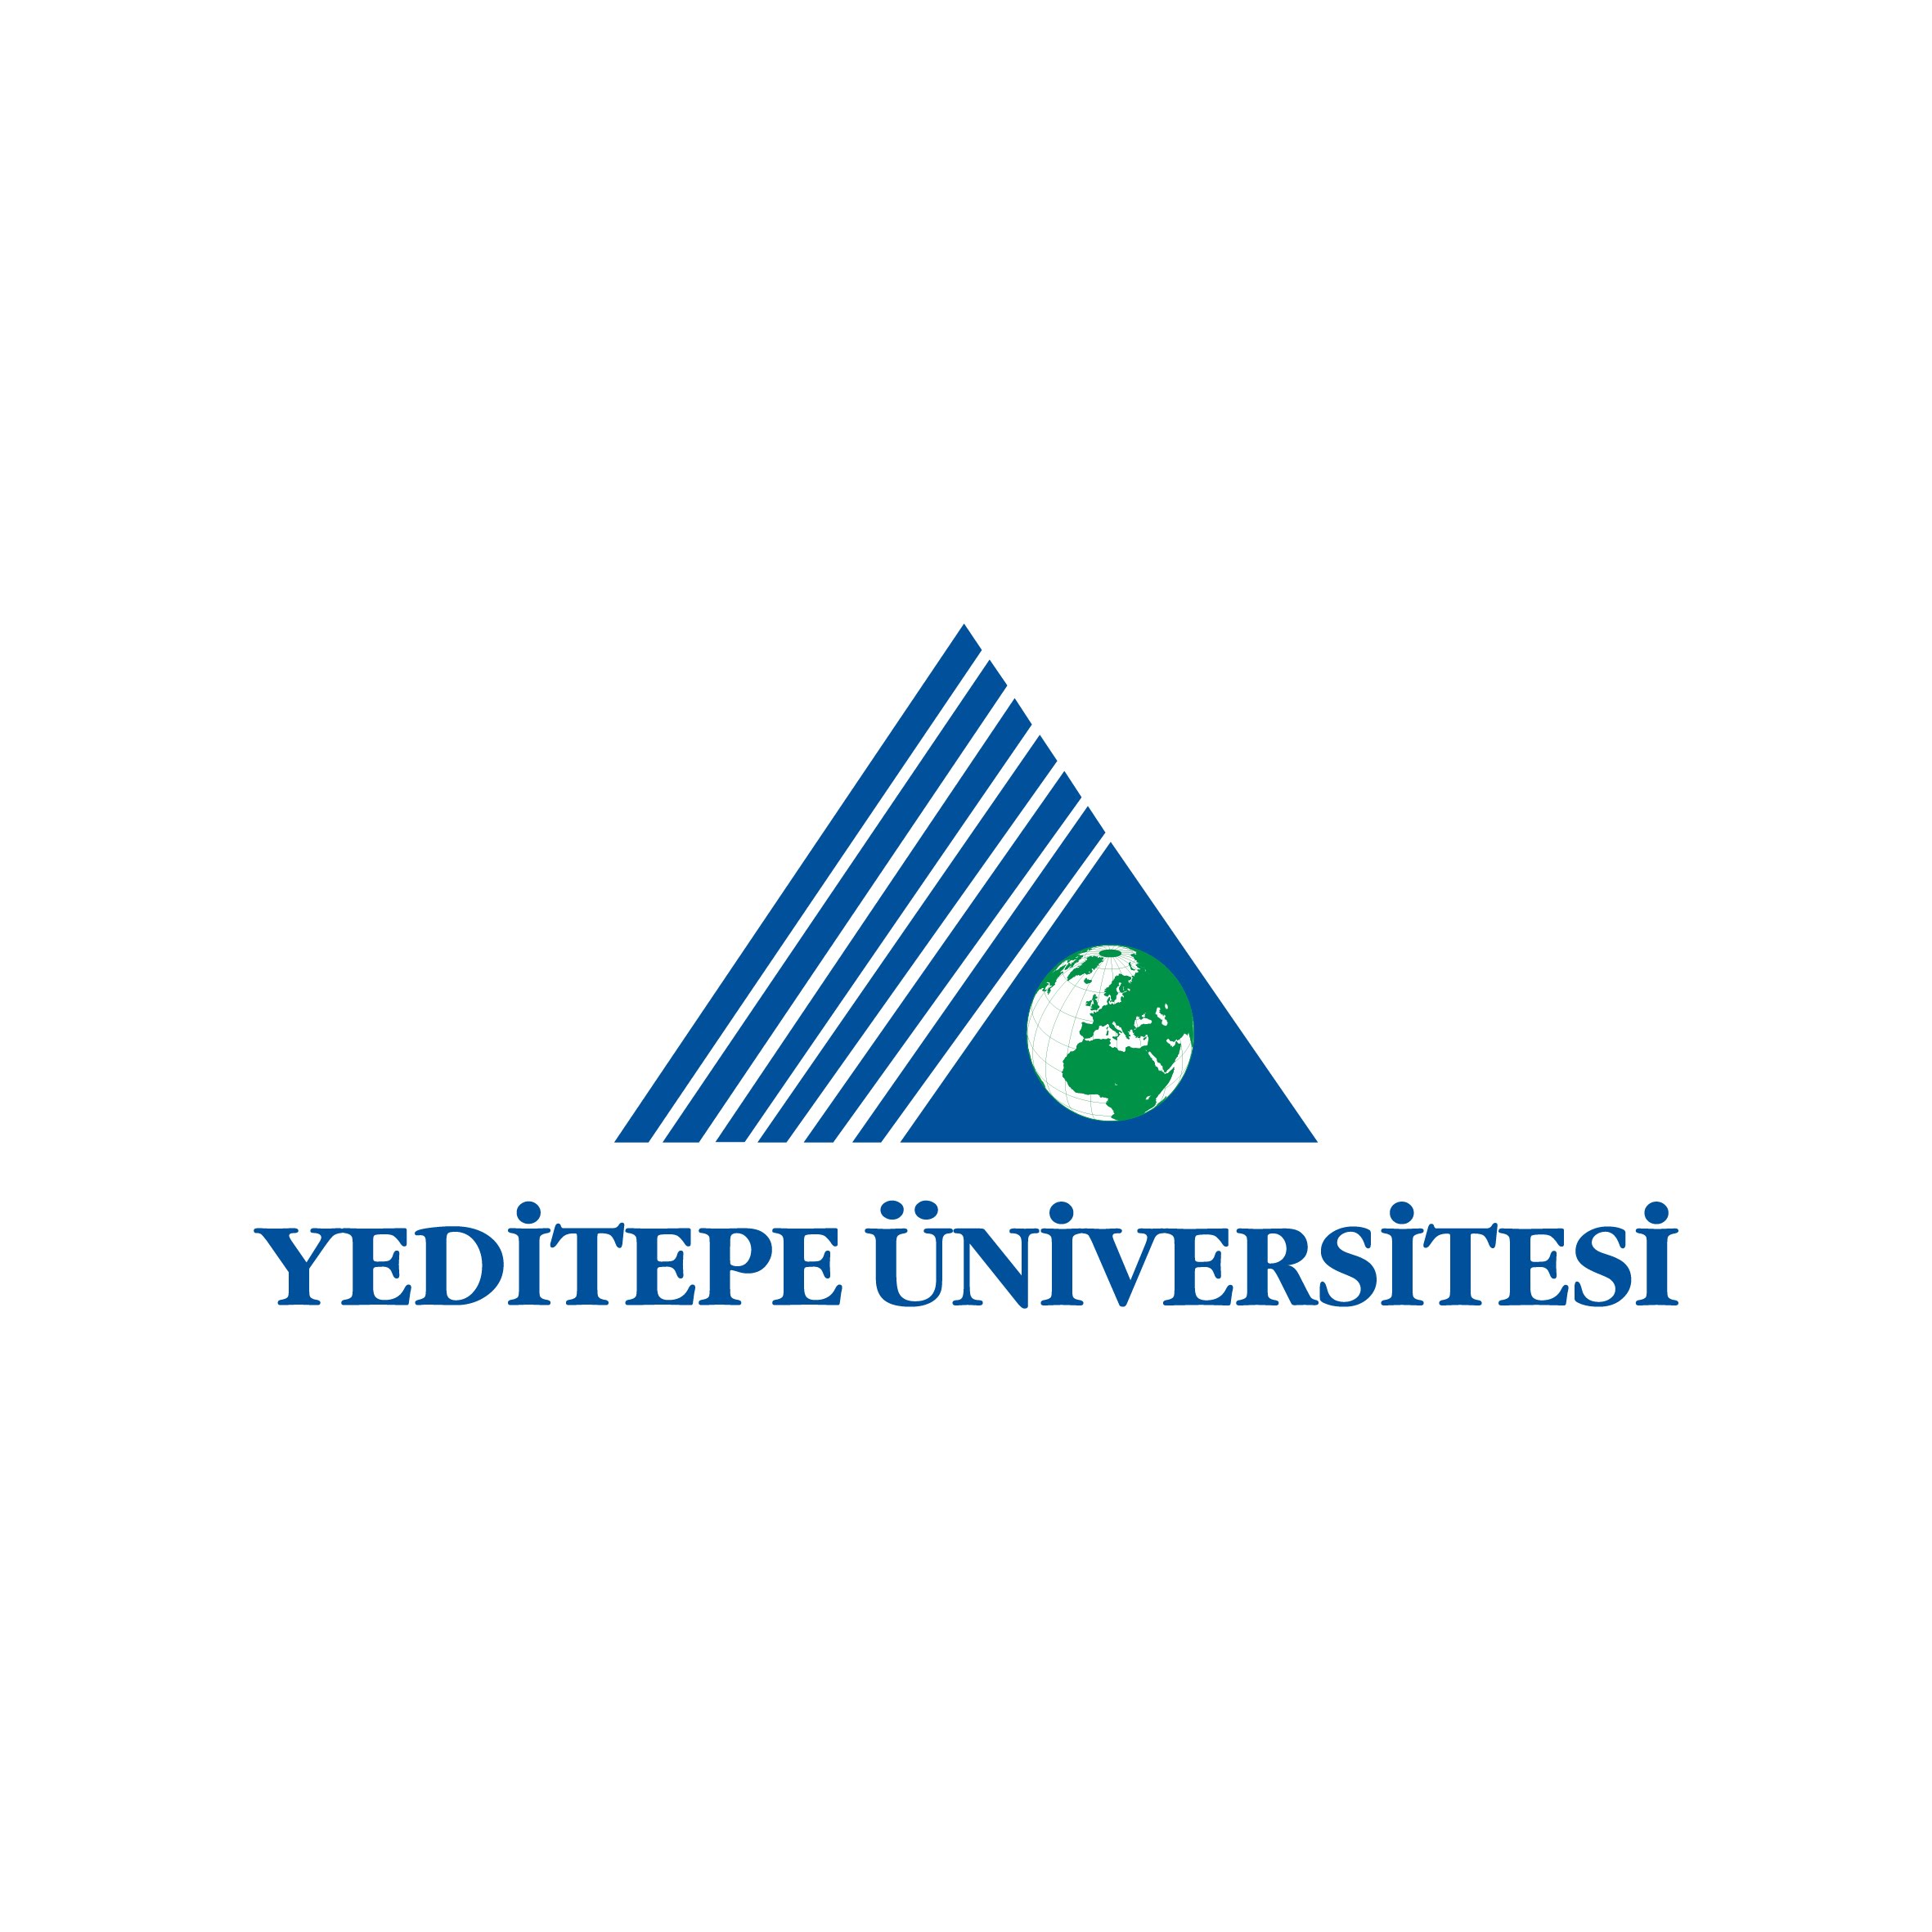 Yudak - Yediitepe Universitesi Logo photo - 1